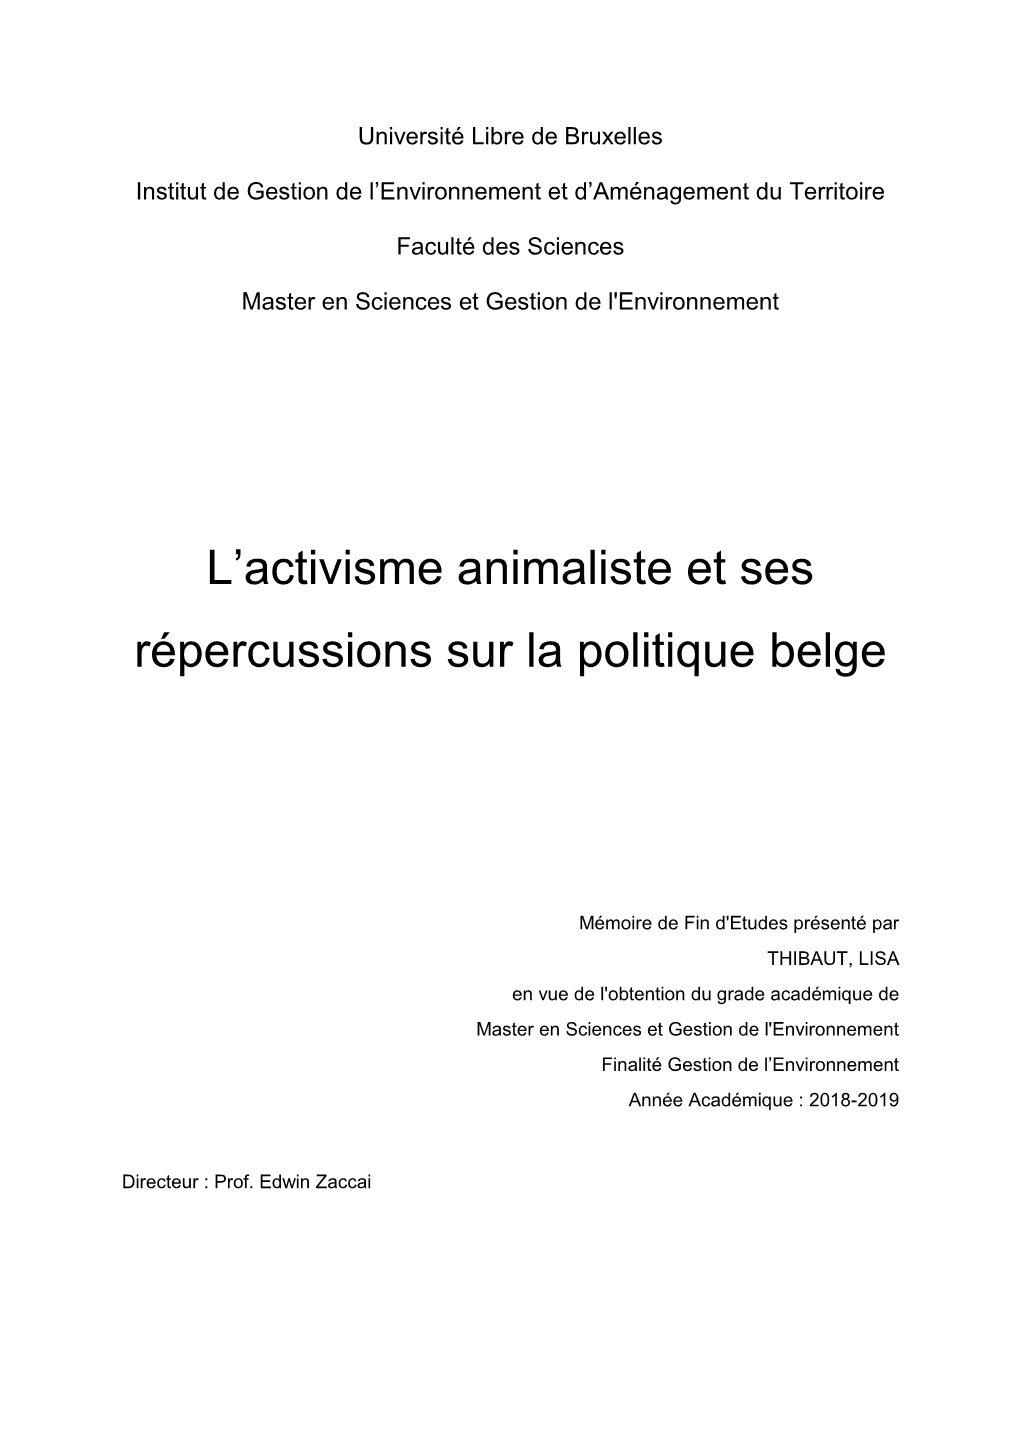 L'activisme Animaliste Et Ses Répercussions Sur La Politique Belge